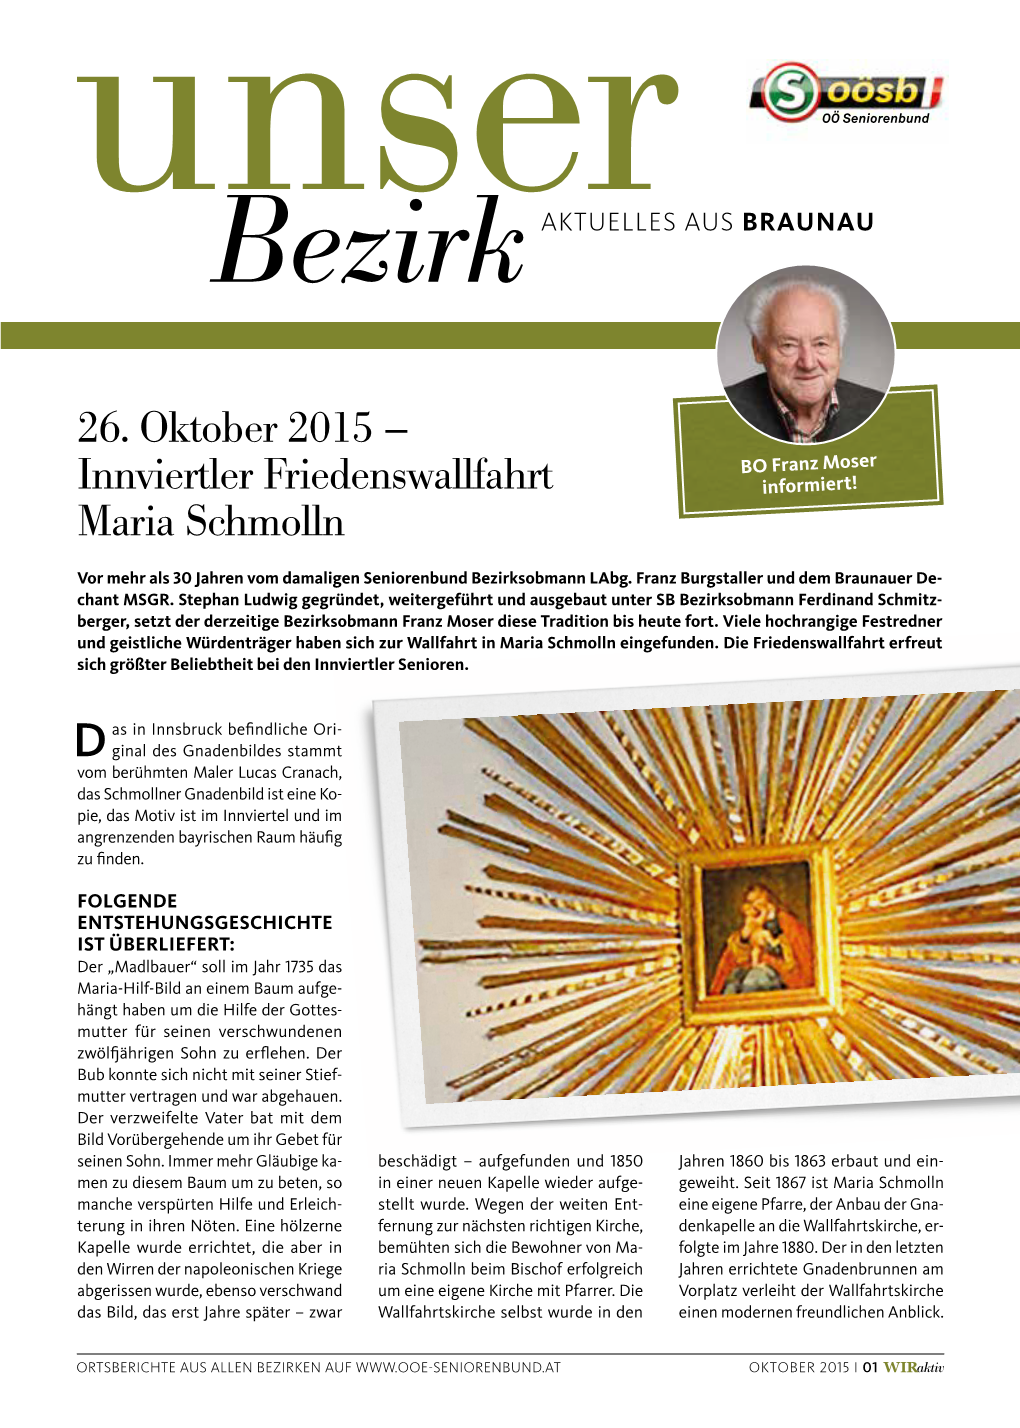 26. Oktober 2015 – Innviertler Friedenswallfahrt Maria Schmolln